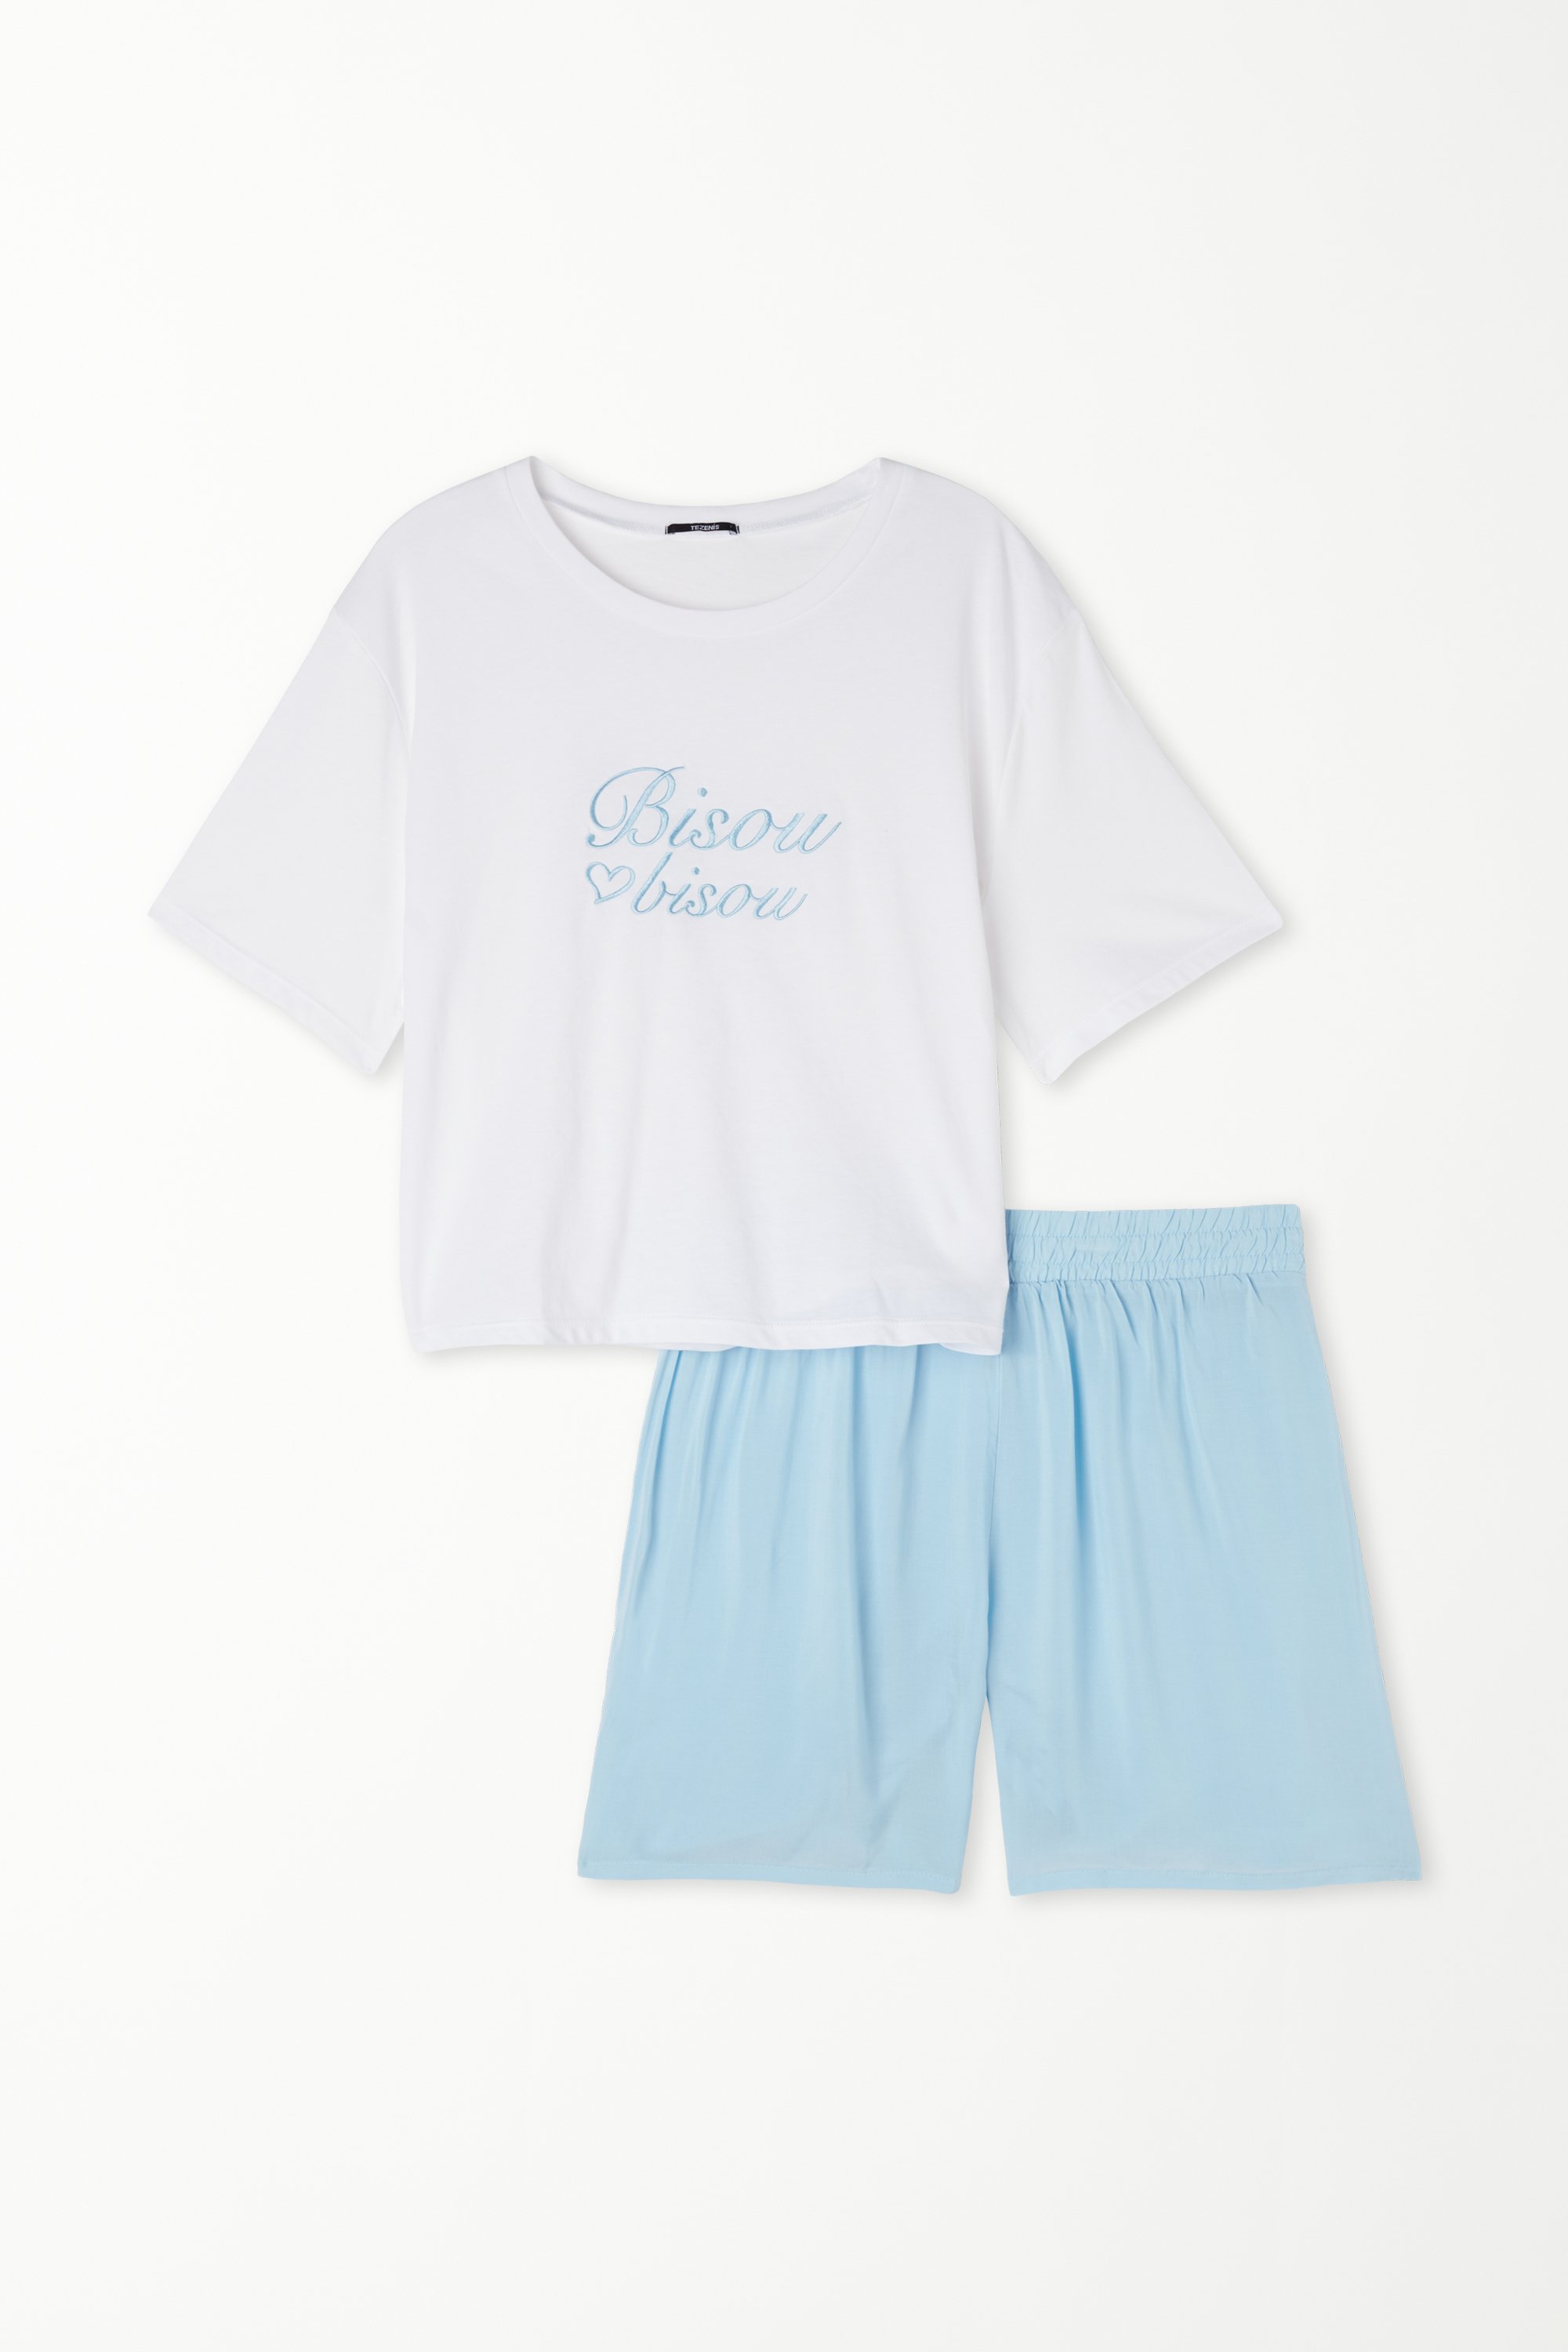 Short Cotton Pyjamas with "Bisou" Print